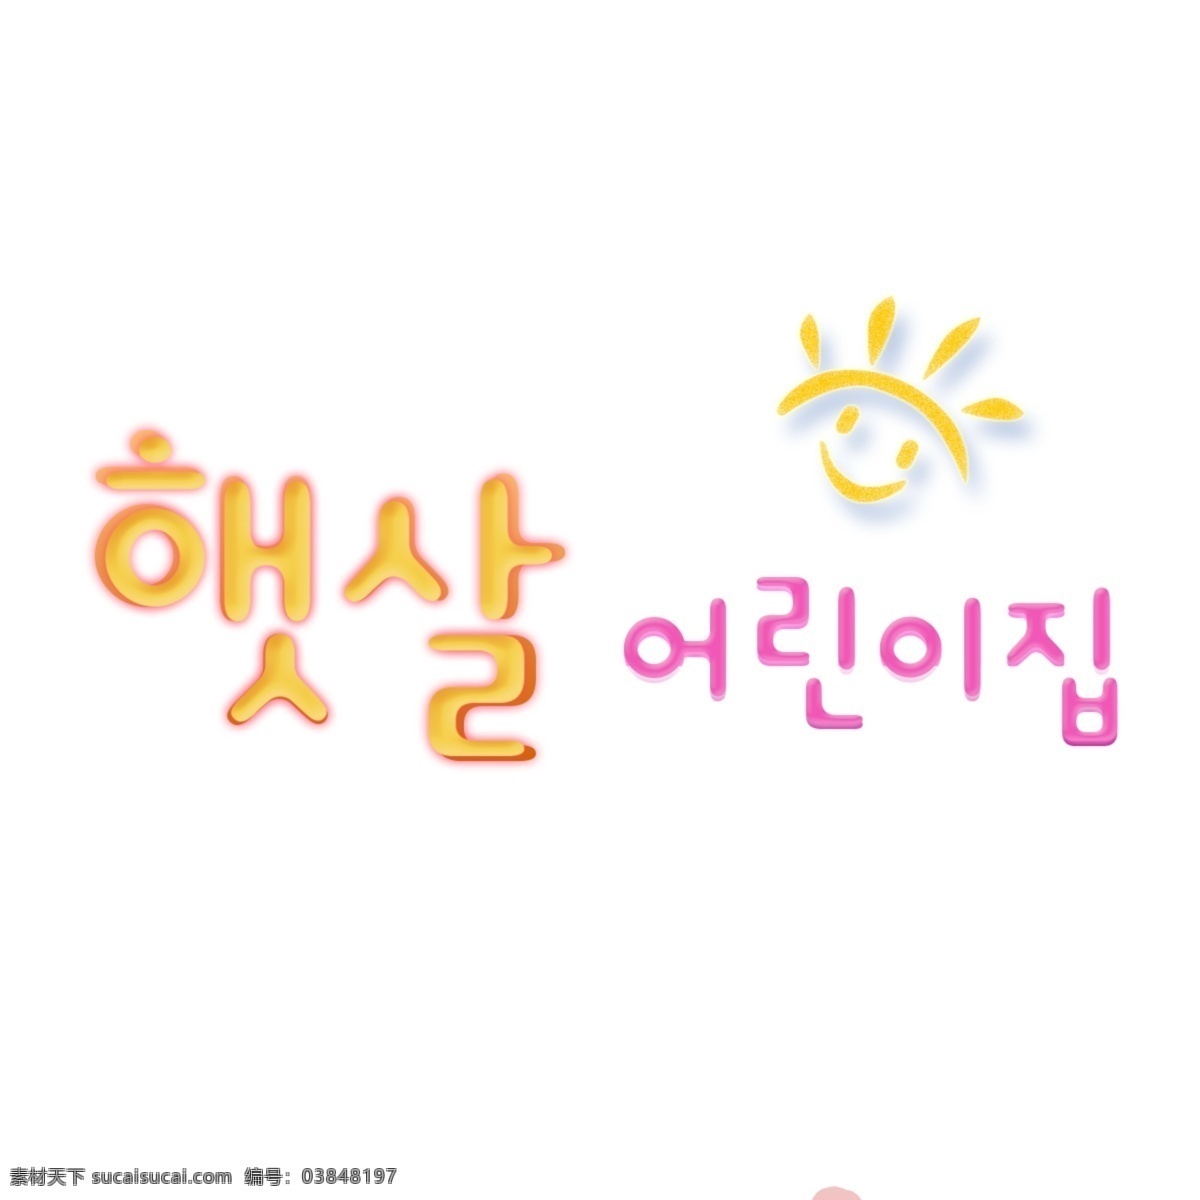 可爱 韩国 字体 阳光 幼儿园 字形 阳光幼儿园 晴朗 现场 孩子